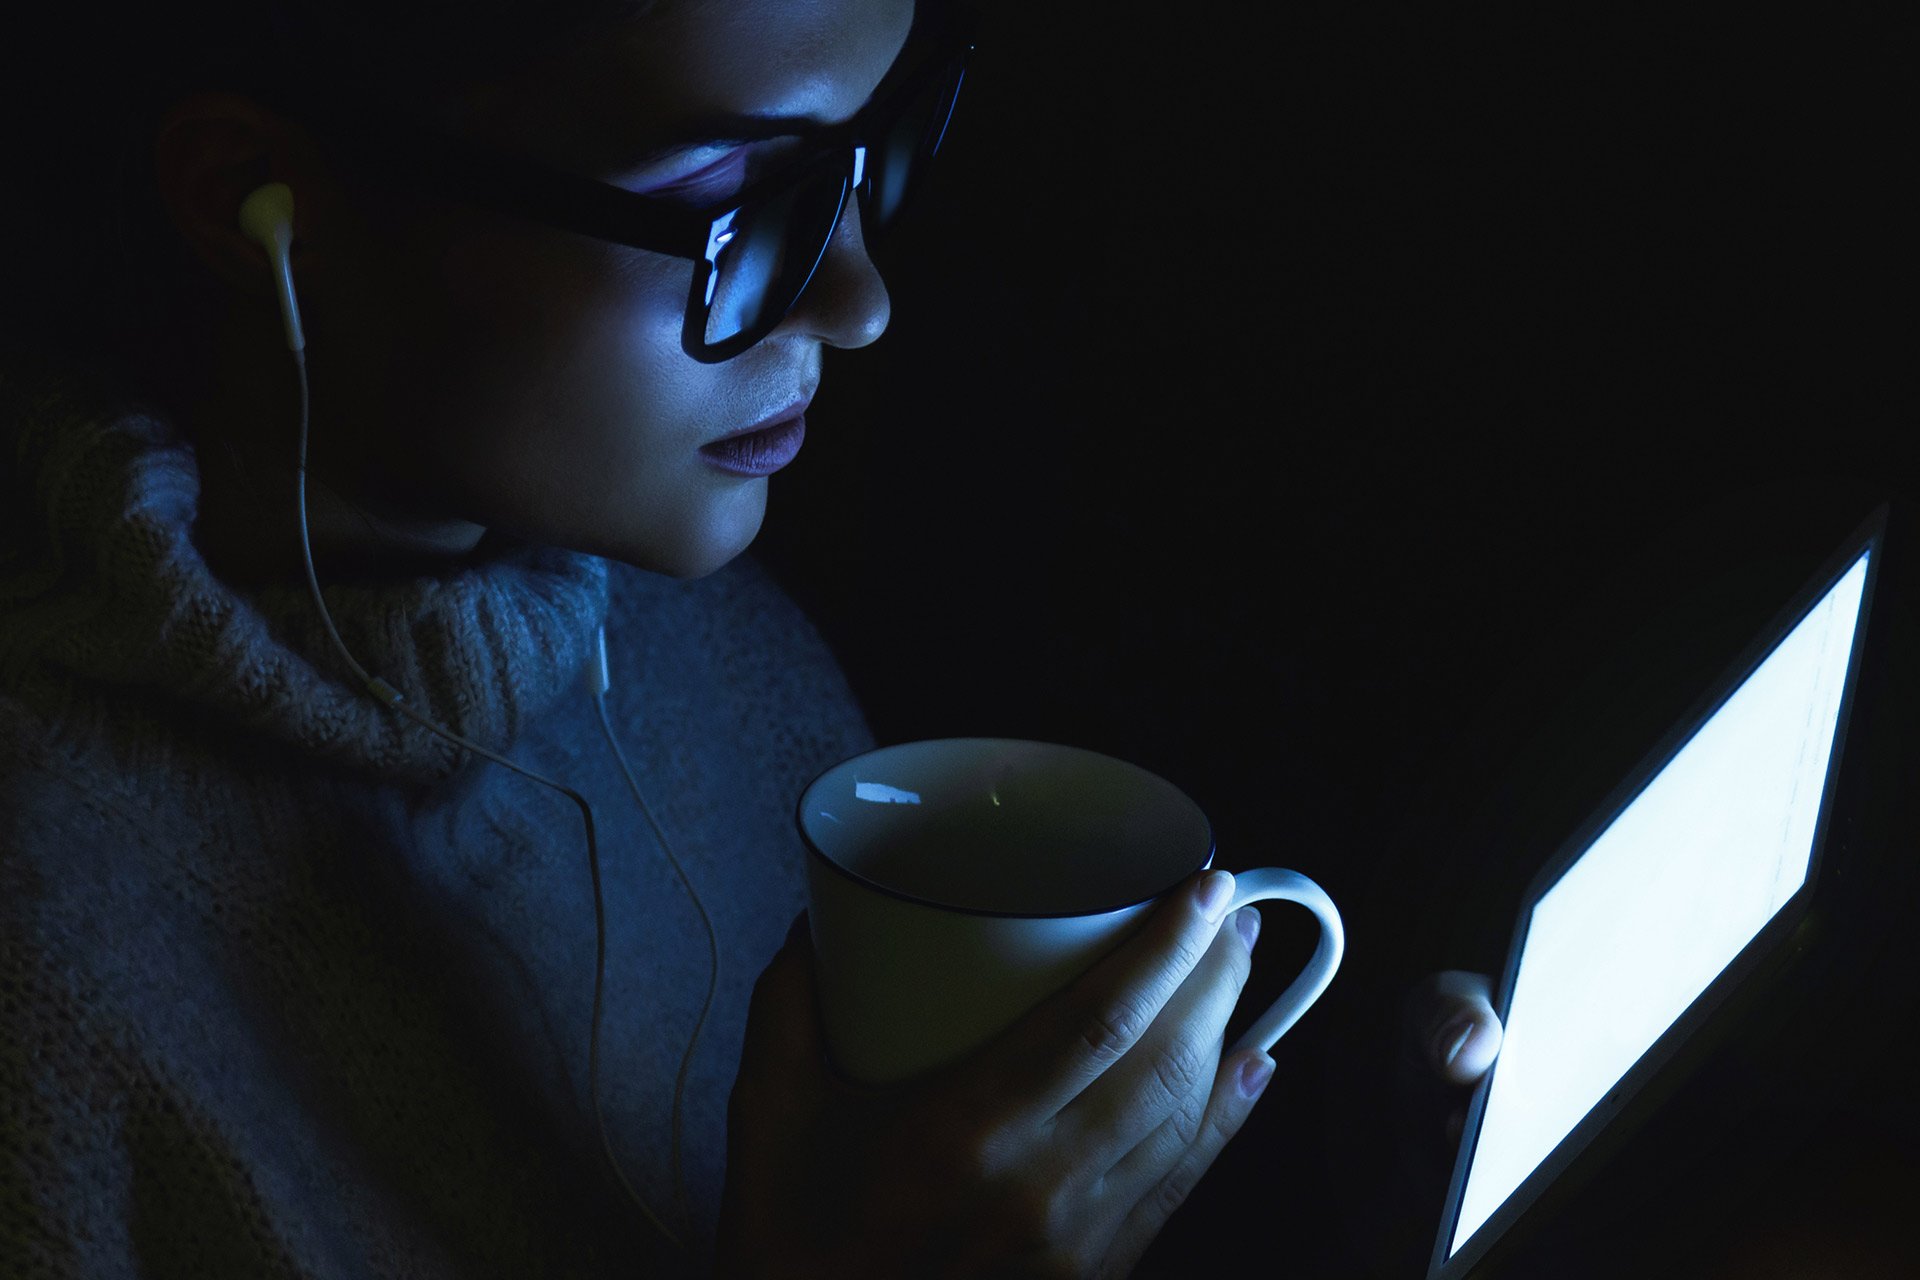 Fast alle modernen Geräte emittieren blaues Licht, was die Symptome von digitalem Sehstress verschlimmern kann.